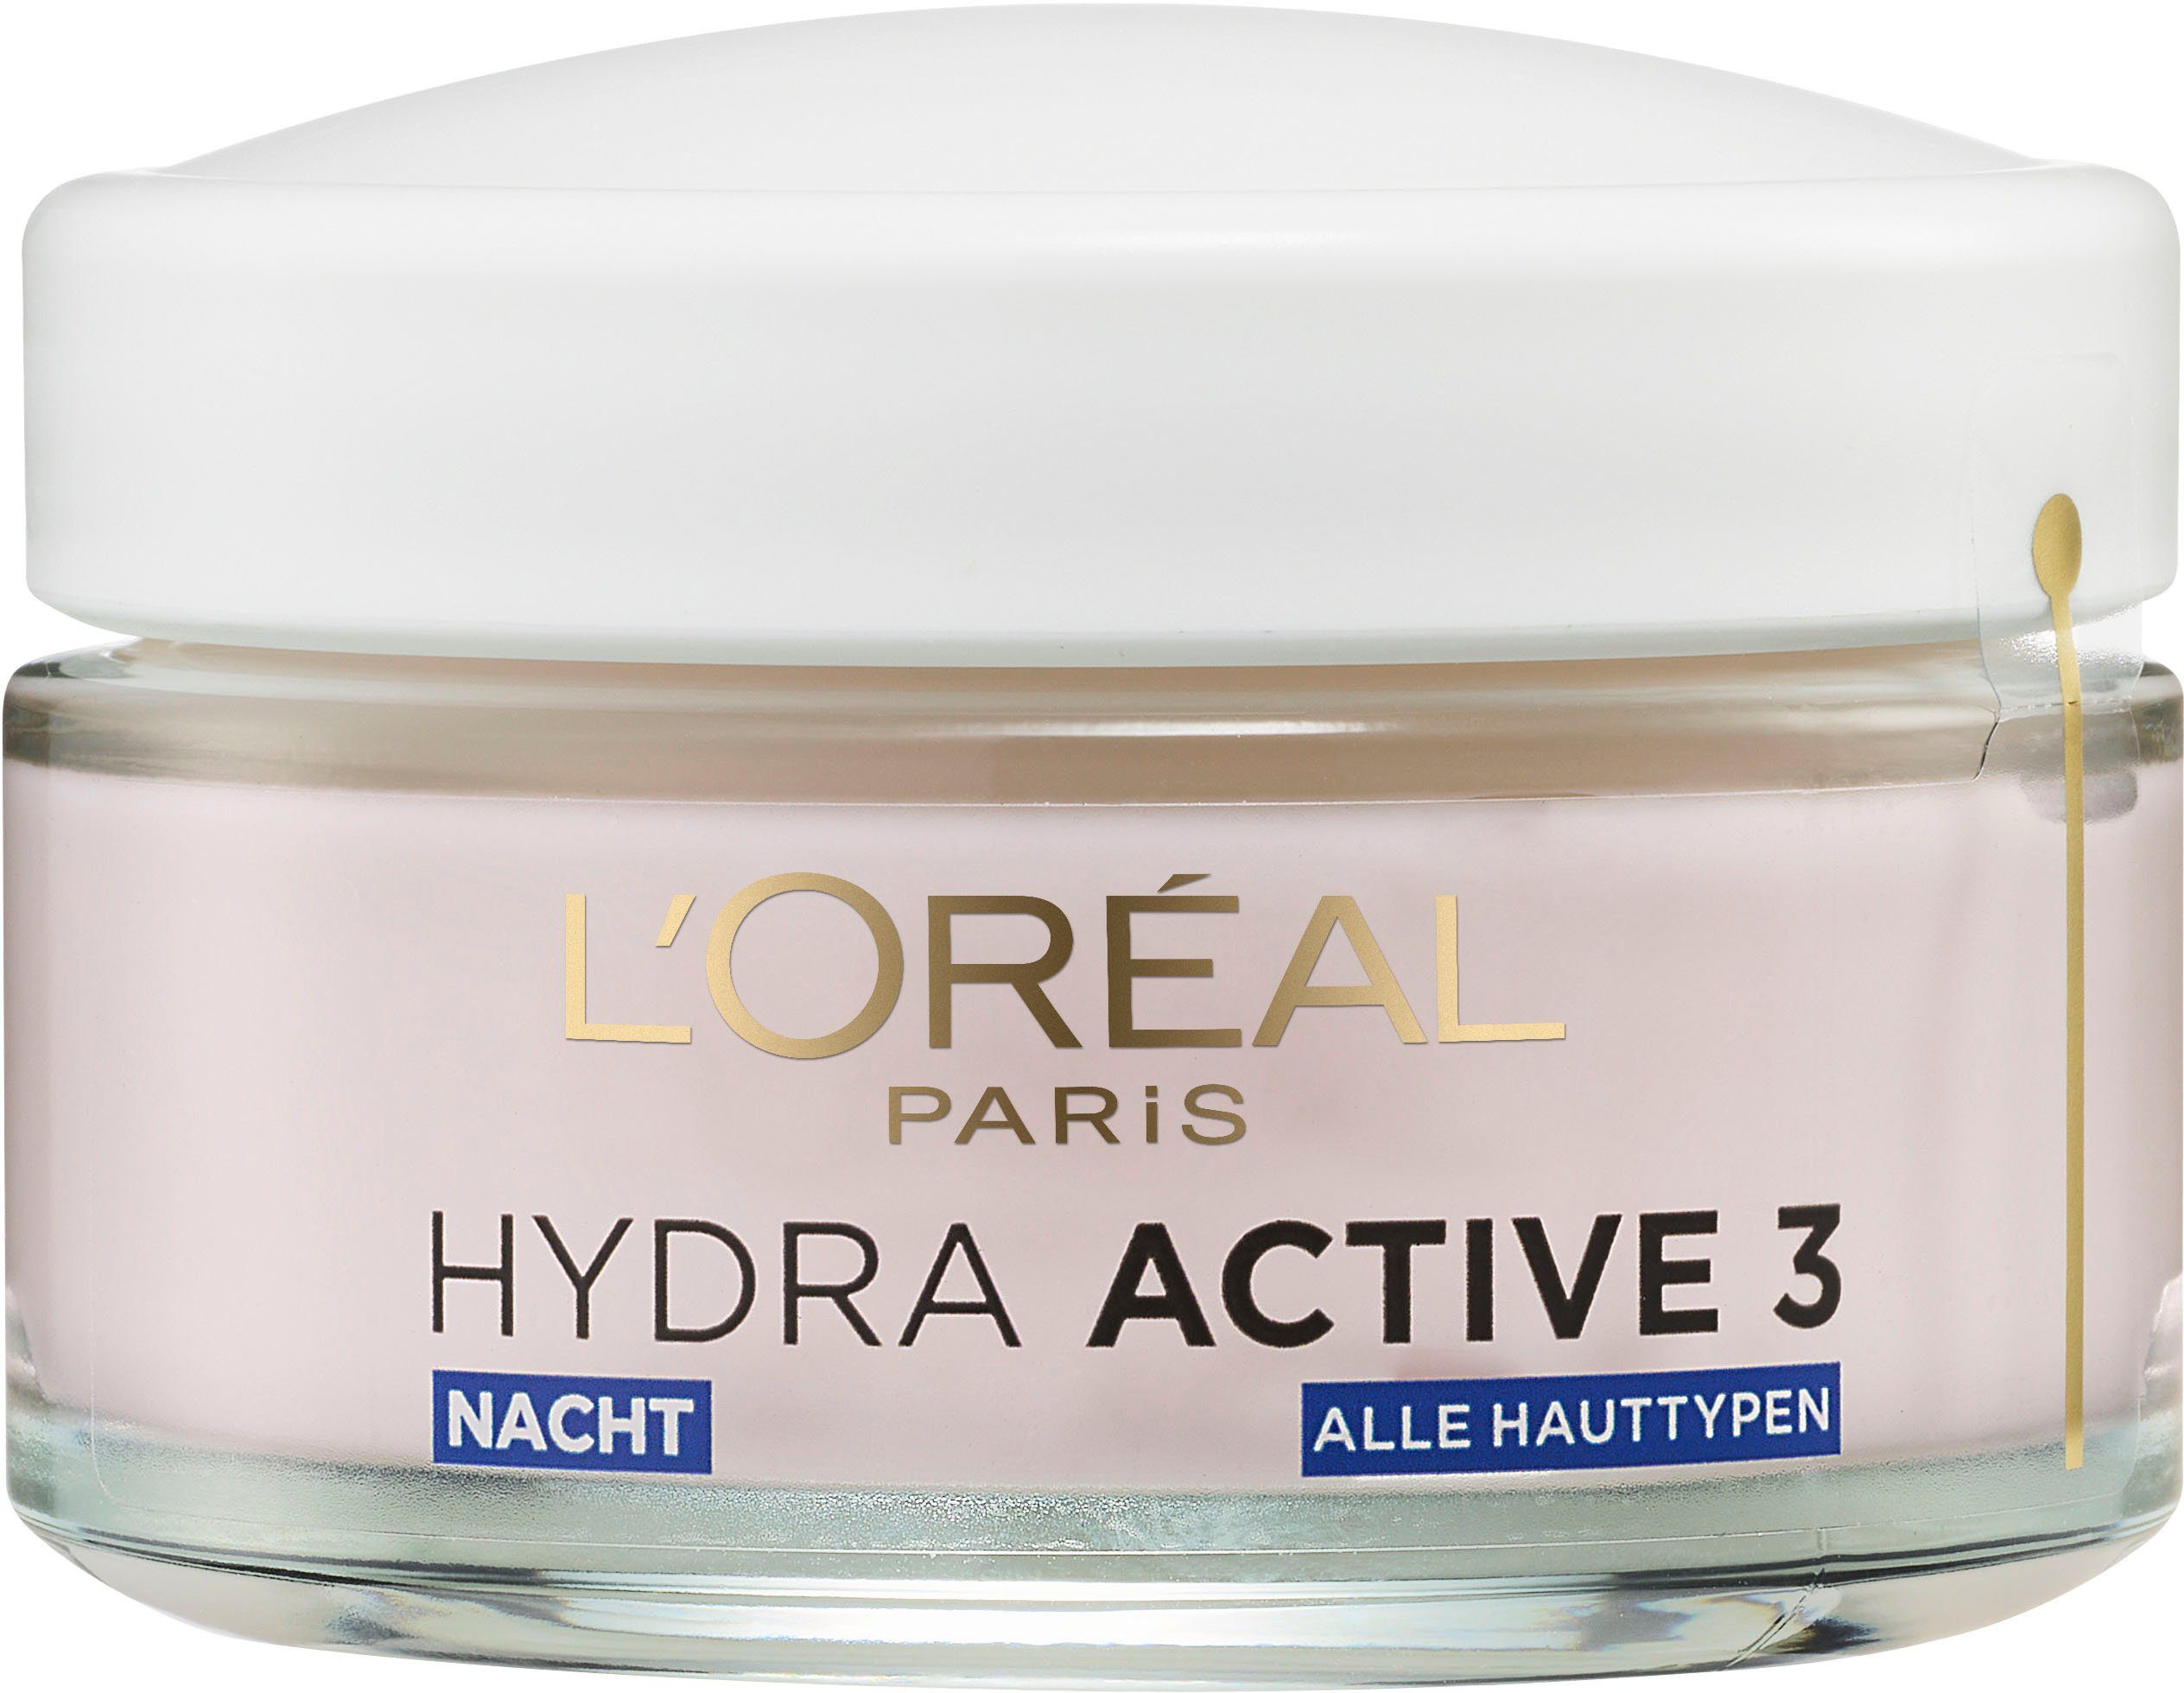 Hydra Nacht, Nachtcreme Active L'ORÉAL 3 Mit Aktiv-Stoffen PARIS